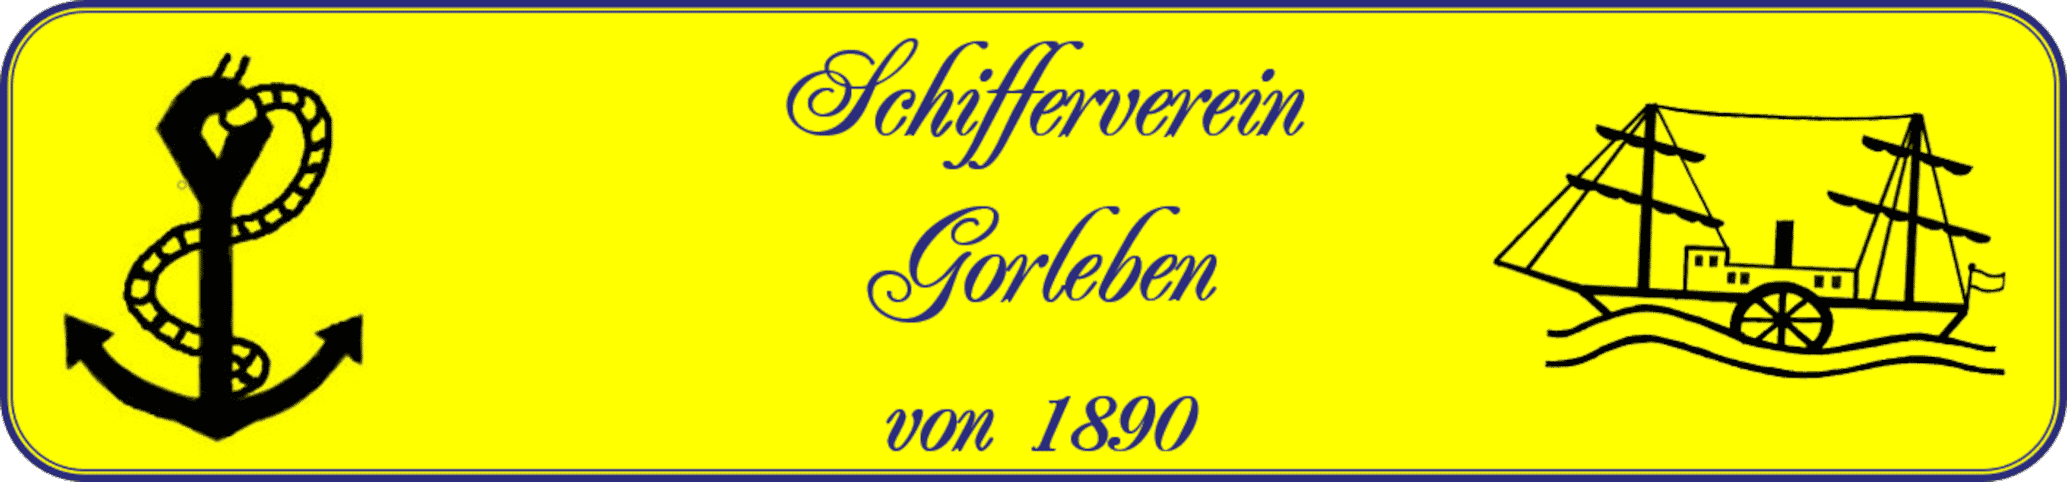 Logo des Schifferverein Gorleben von 1890